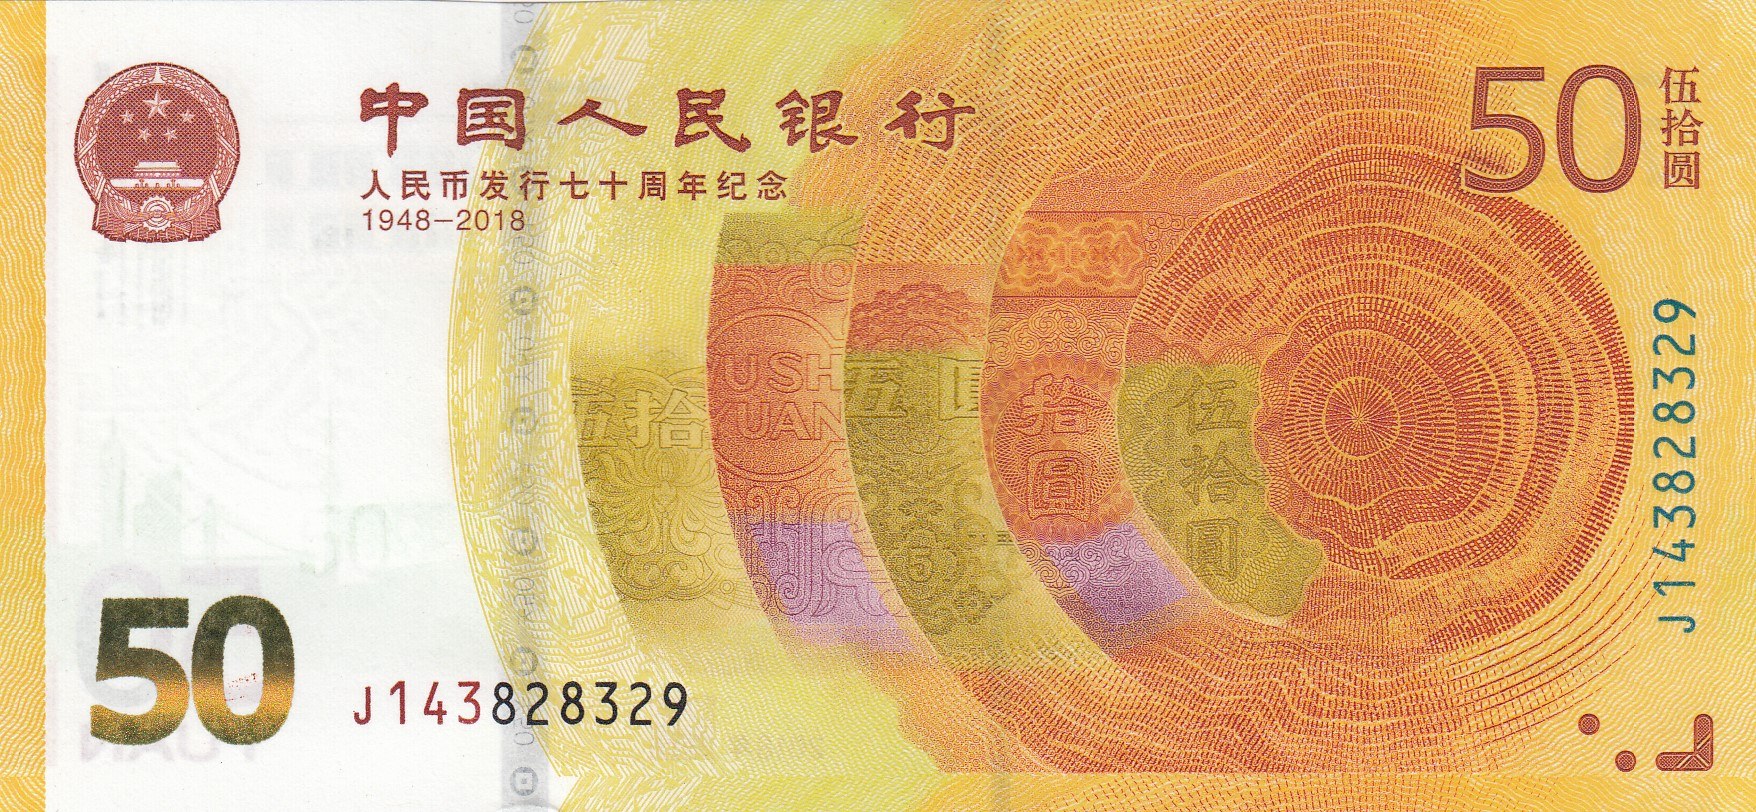 Китайские купить саратов. 50 Юаней Китай. 50 Юаней купюра. 50 Юаней банкнота. 50 Юань юбилейные.